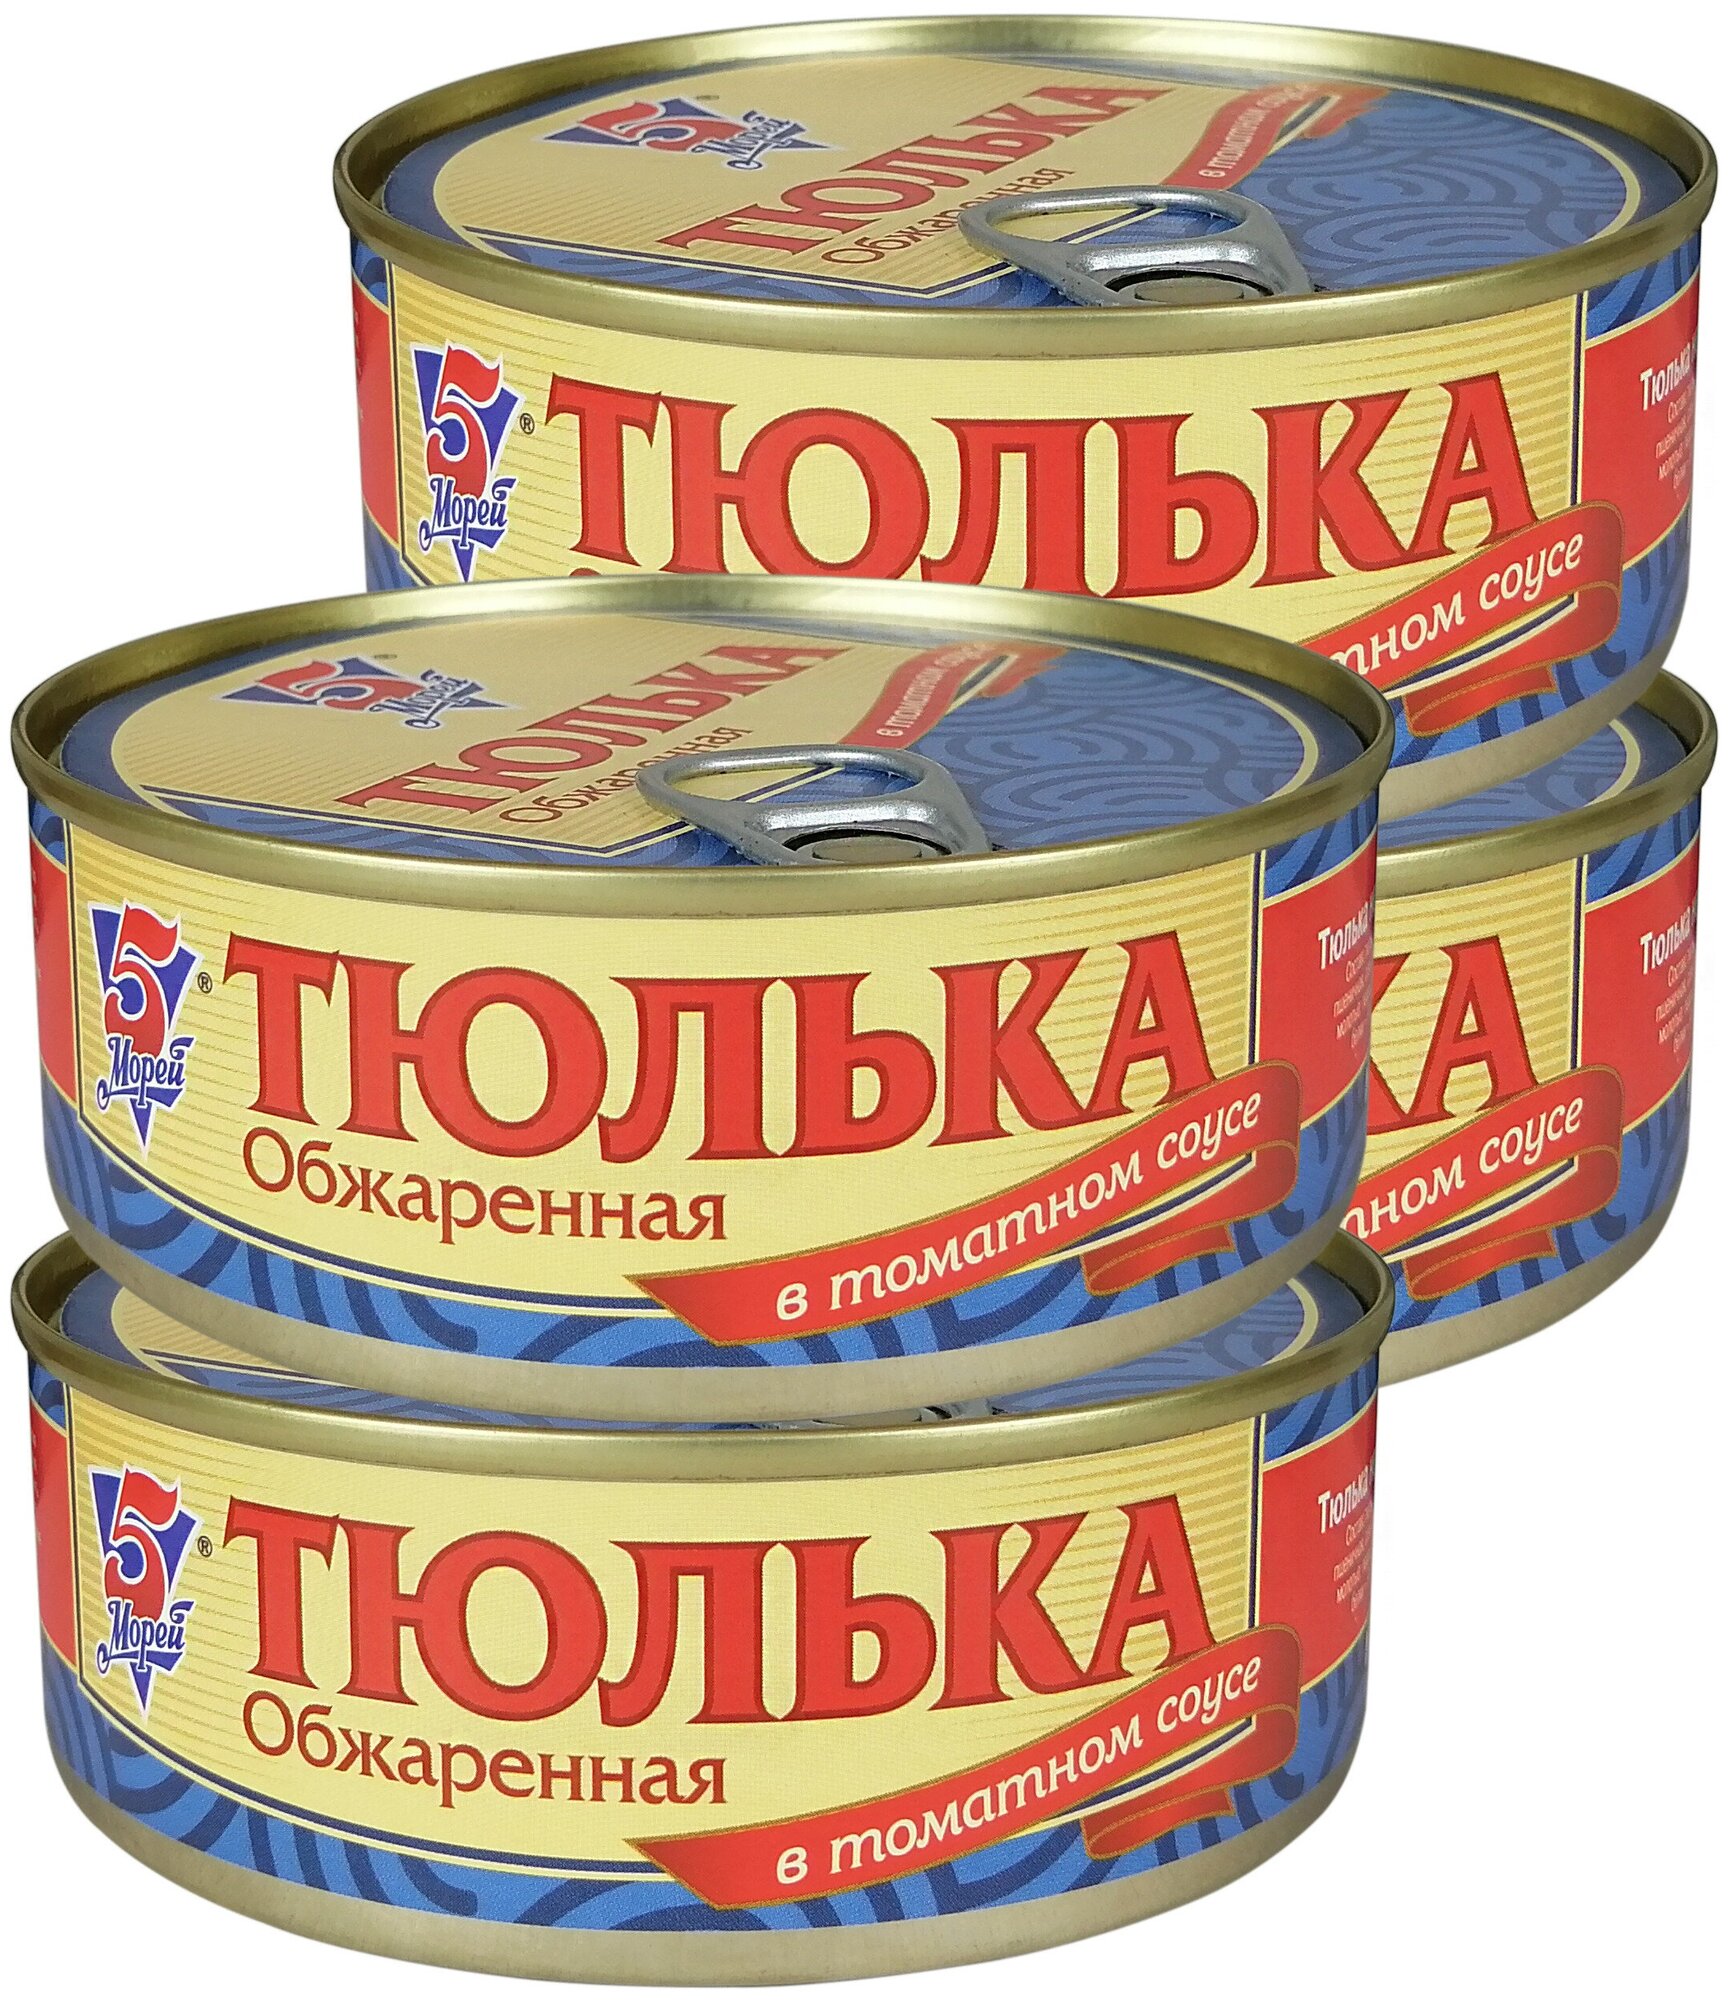 Консервы рыбные 5 Морей - Тюлька неразделанная обжаренная в томатном соусе, 240 г - 4 шт